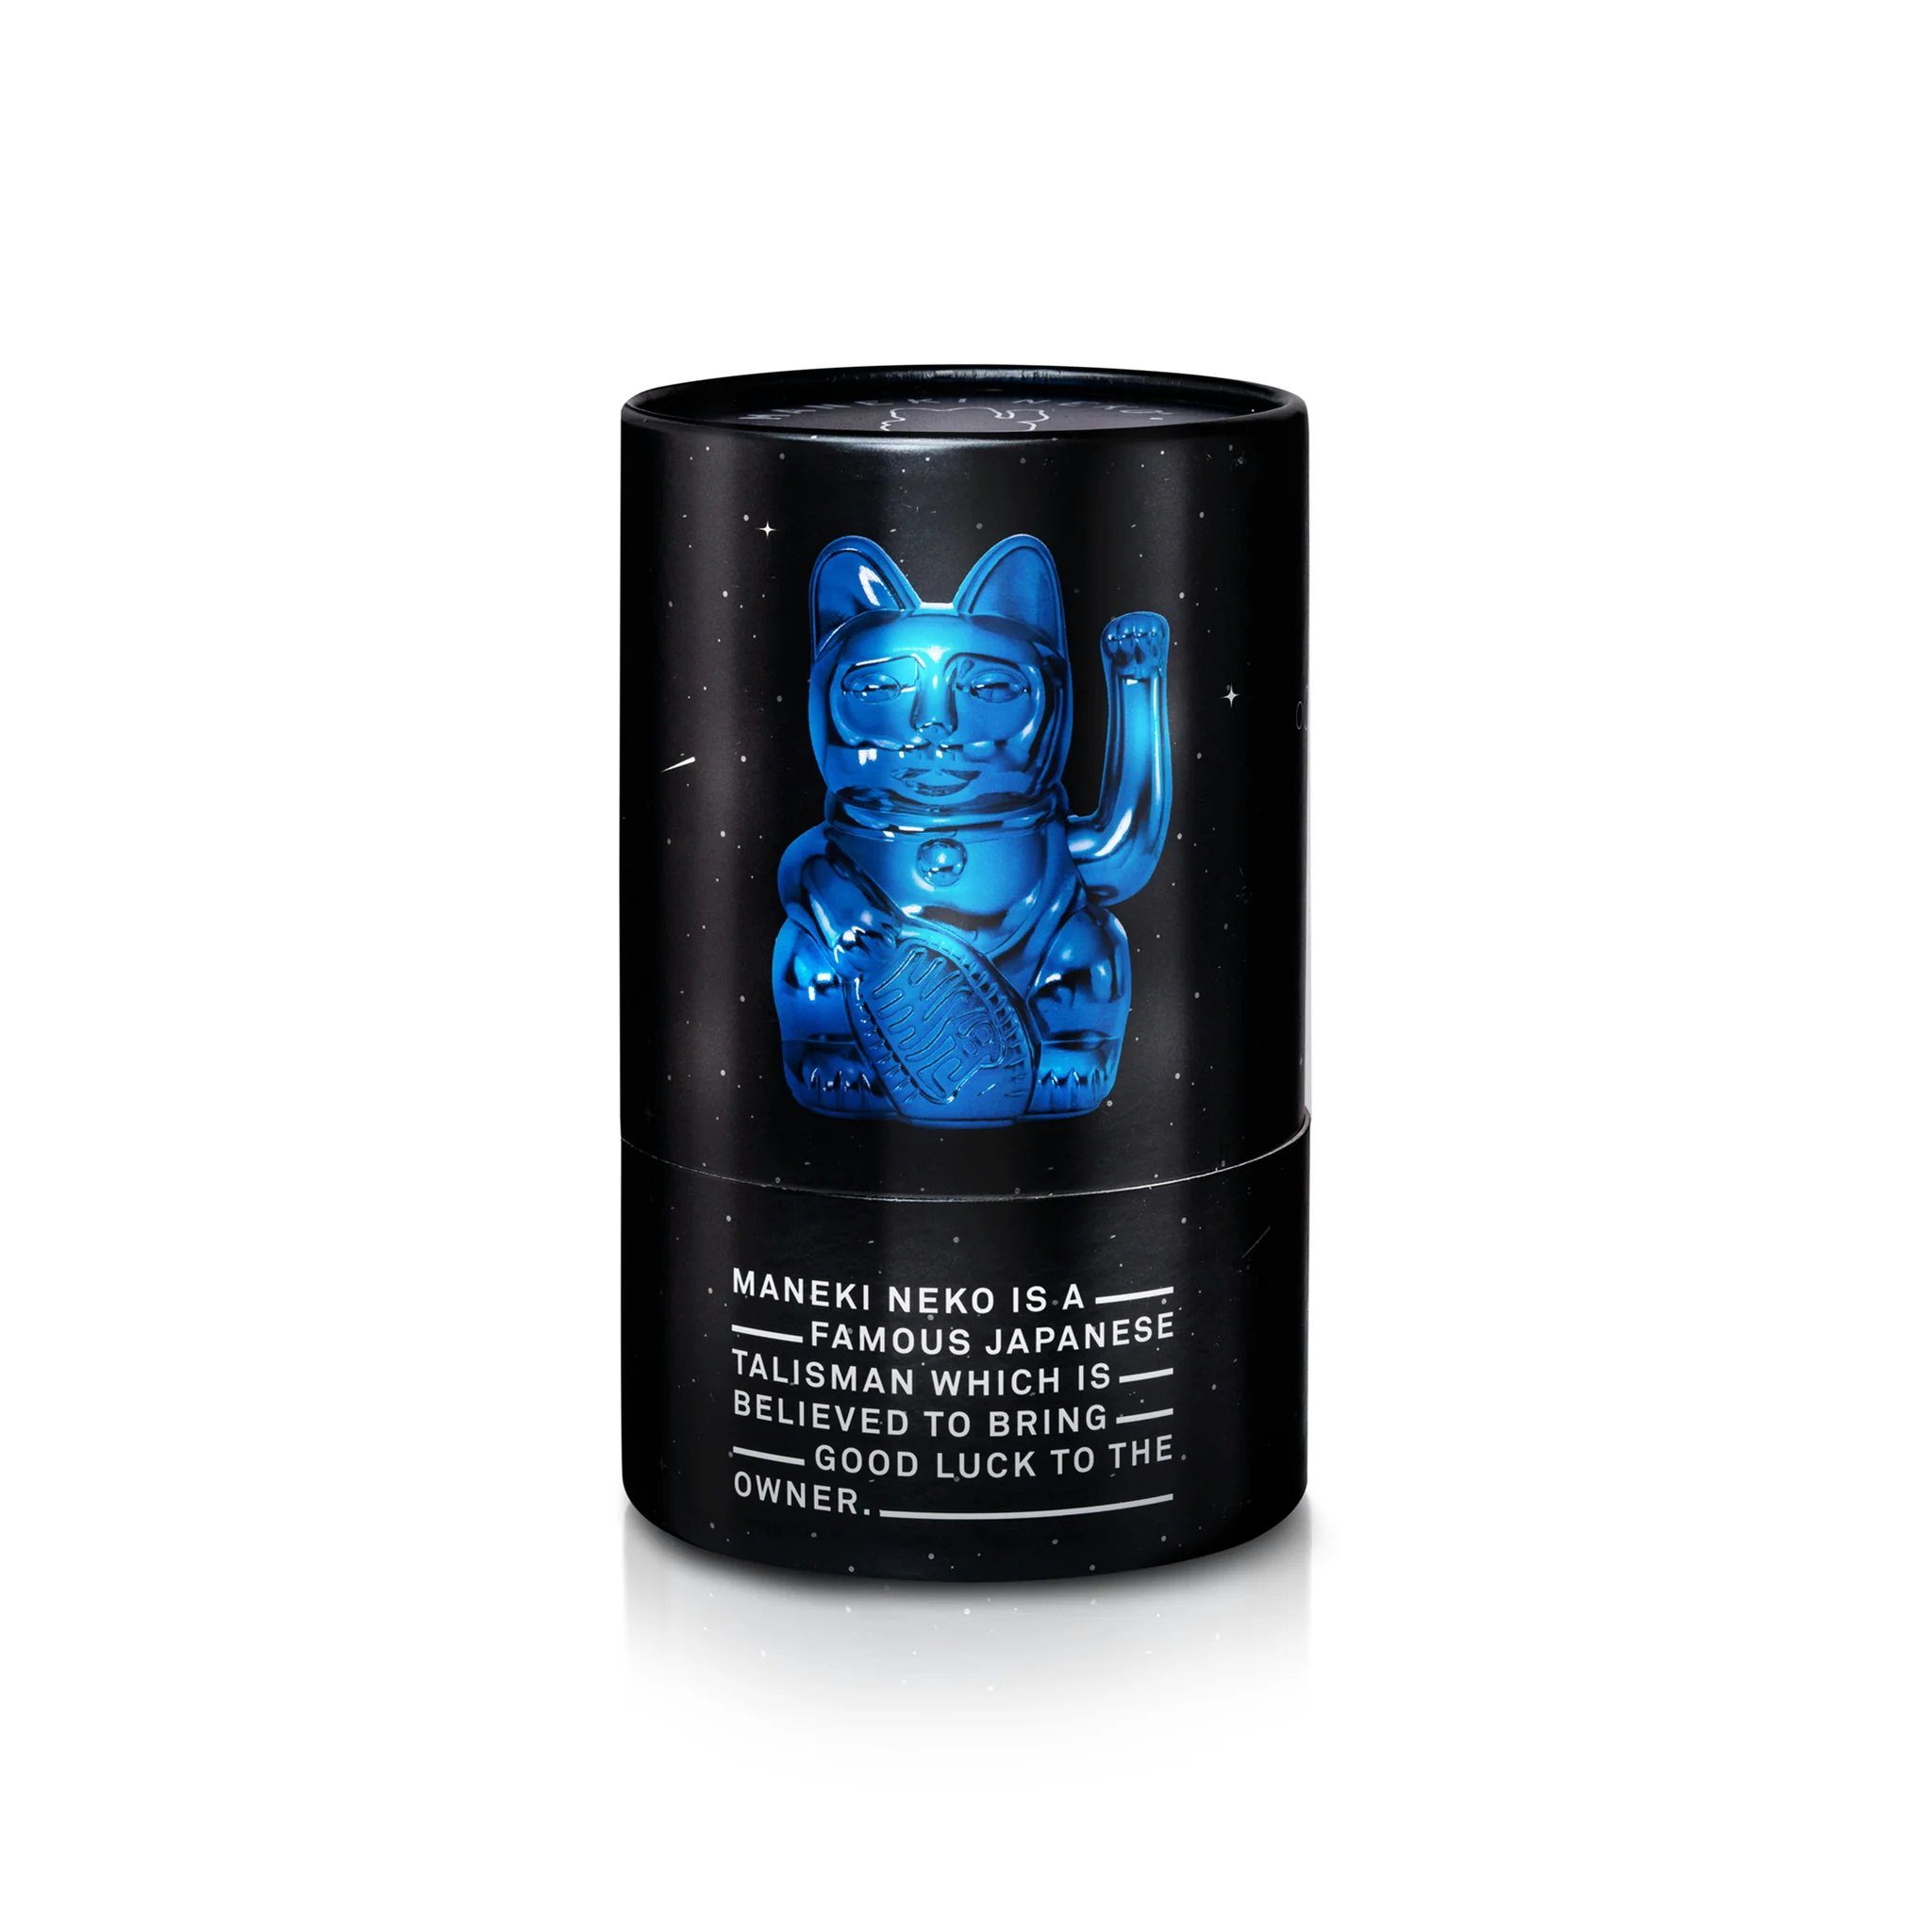 Donkey Cat Cosmic - Dekofigur Lucky Products Winkekatze Donkey Edition Shiny Earth Blue